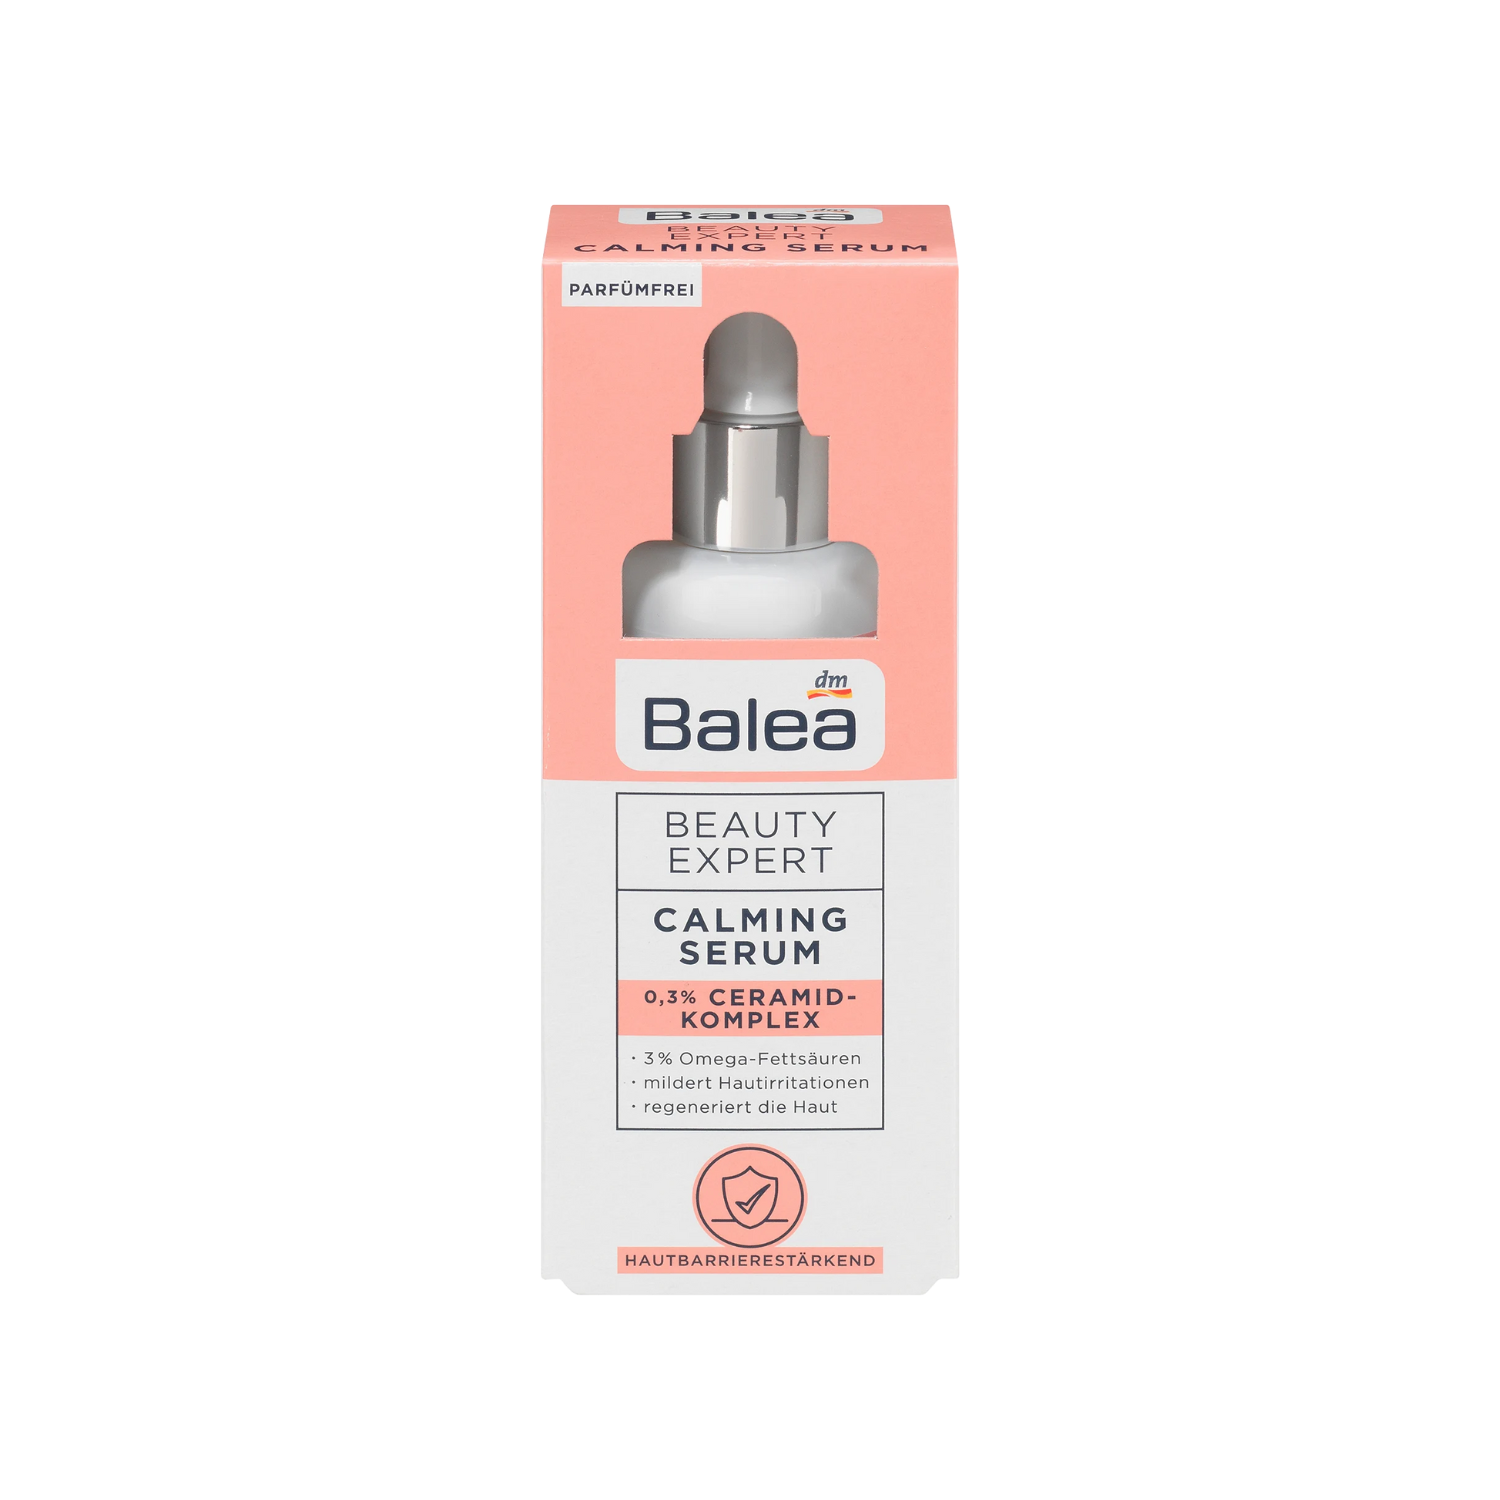 Balea beauty expert calming serum